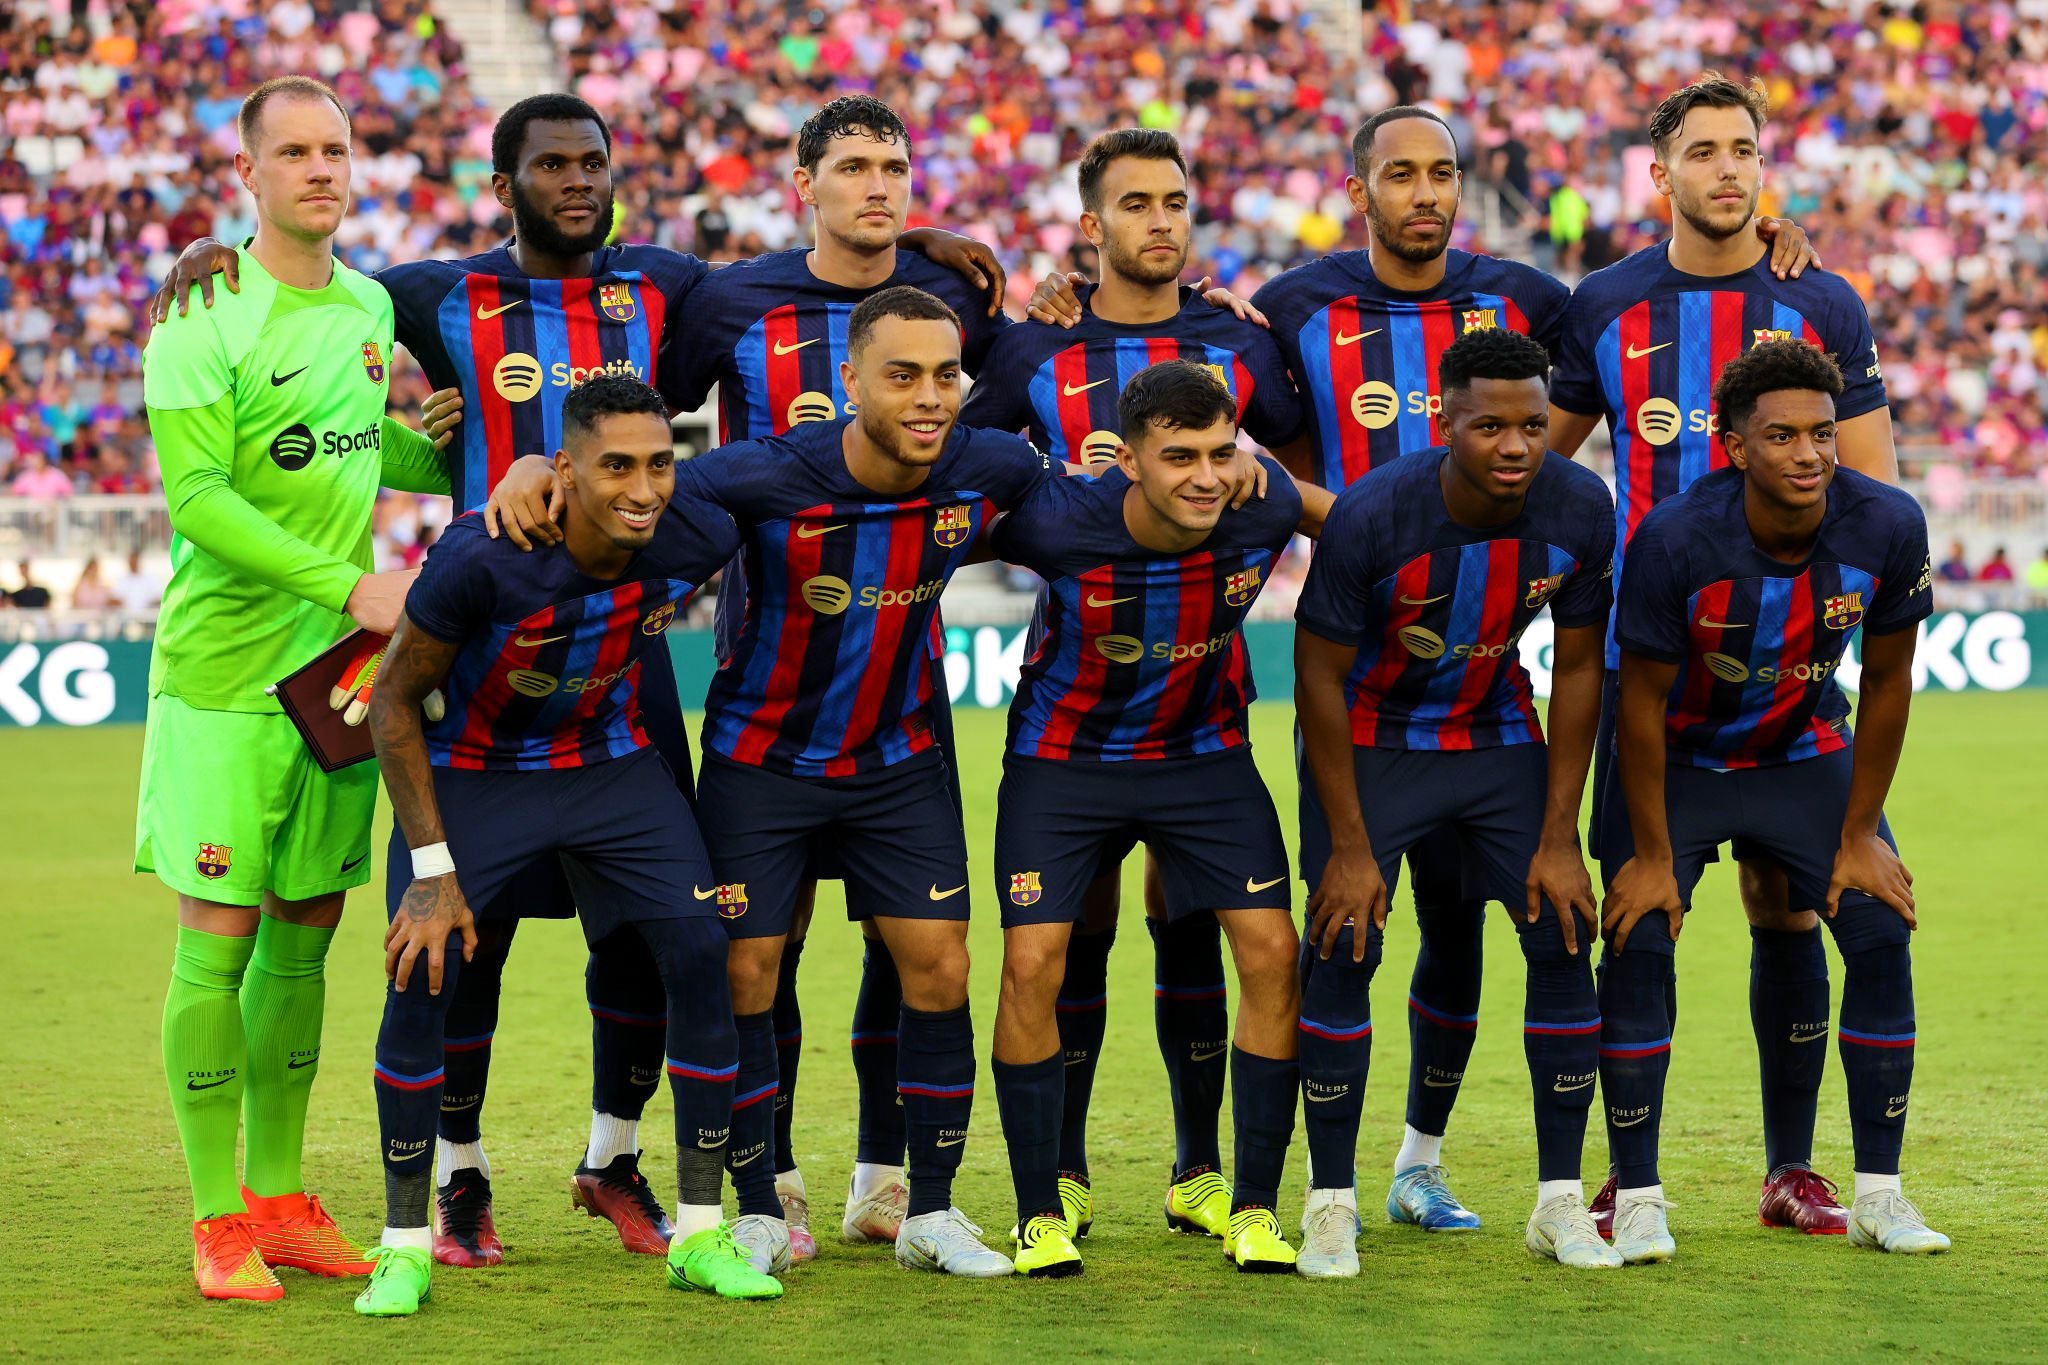 Đội bóng Barcelona - niềm tự hào của các fan hâm mộ bóng đá